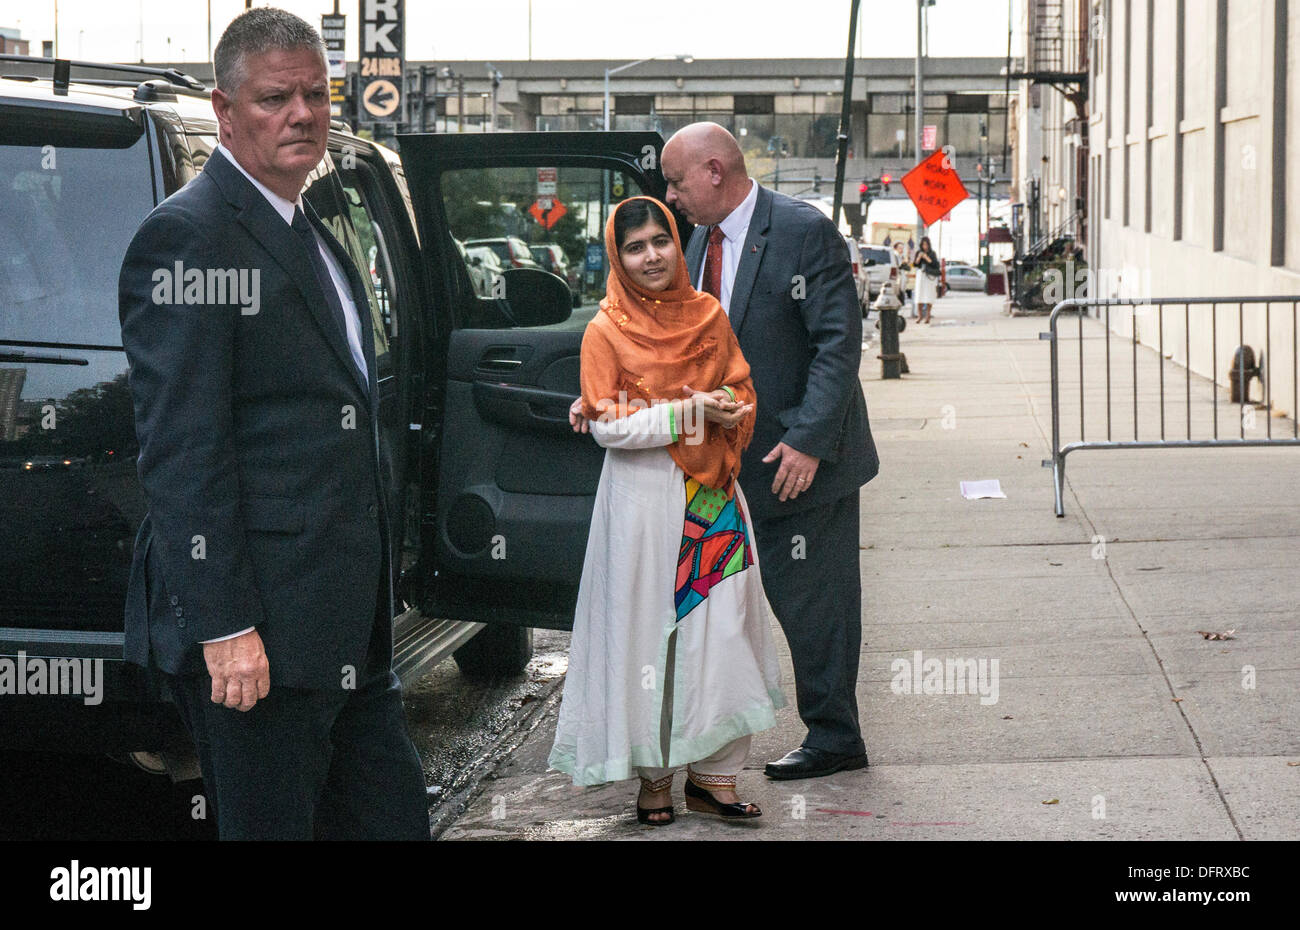 Nueva York, Estados Unidos. 08 Oct, 2013. Yousafzai Malala schoolgirl educación activista pakistaní pausas para firmar copias de su libro "Yo soy Malala: La muchacha que se levantó para educación y fue abatido por los talibanes", como ella llega por aparición en el Daily Show con Jon Stewart. La Ciudad de Nueva York, el martes, 8 de octubre de 2013, EE.UU.. Crédito: Dorothy Alexander/Alamy Live News Foto de stock